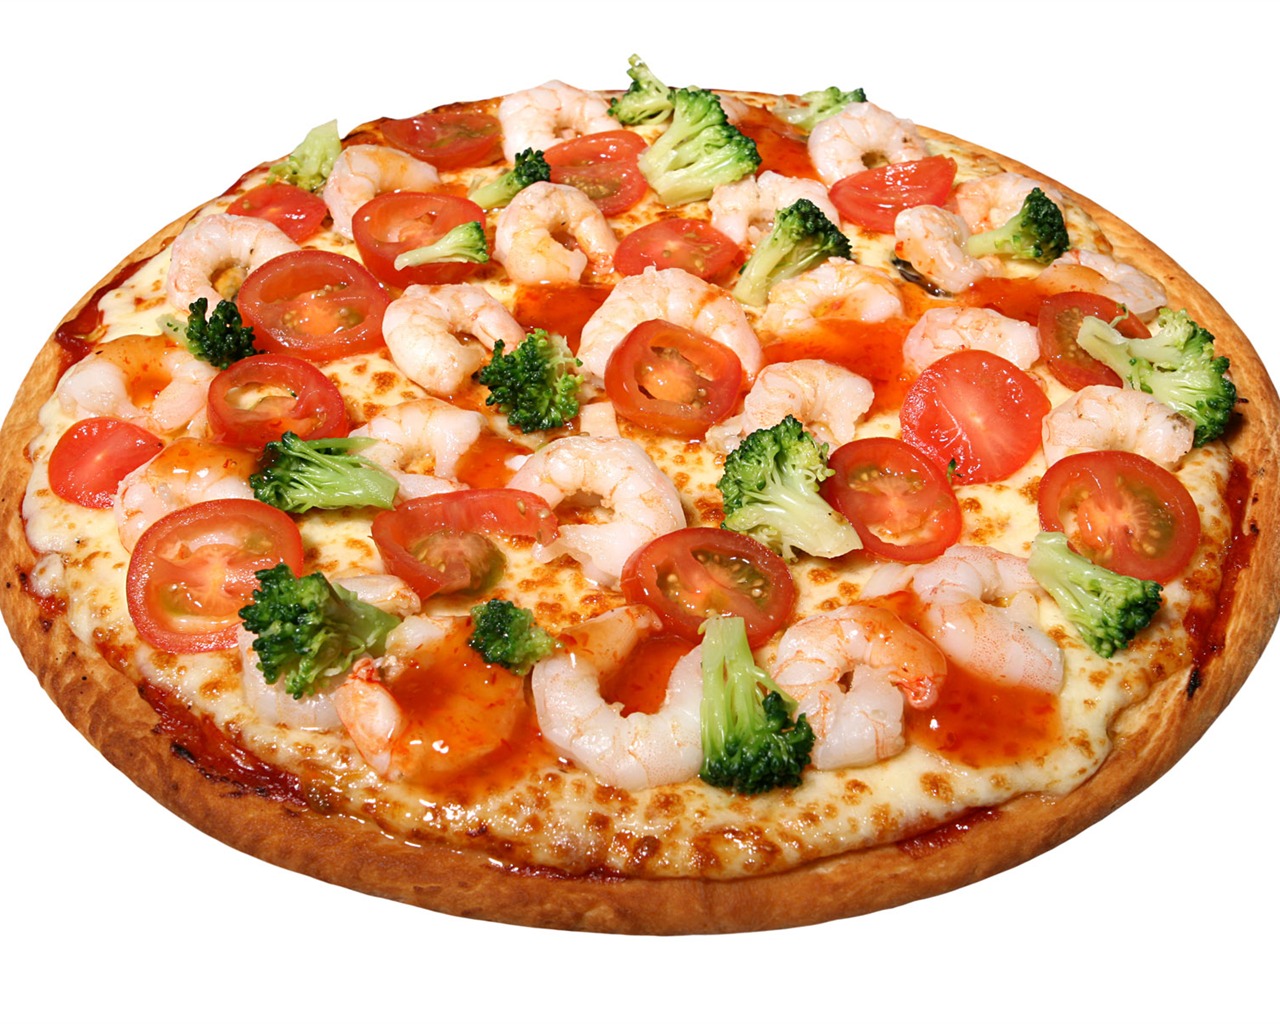 Fondos de pizzerías de Alimentos (4) #13 - 1280x1024